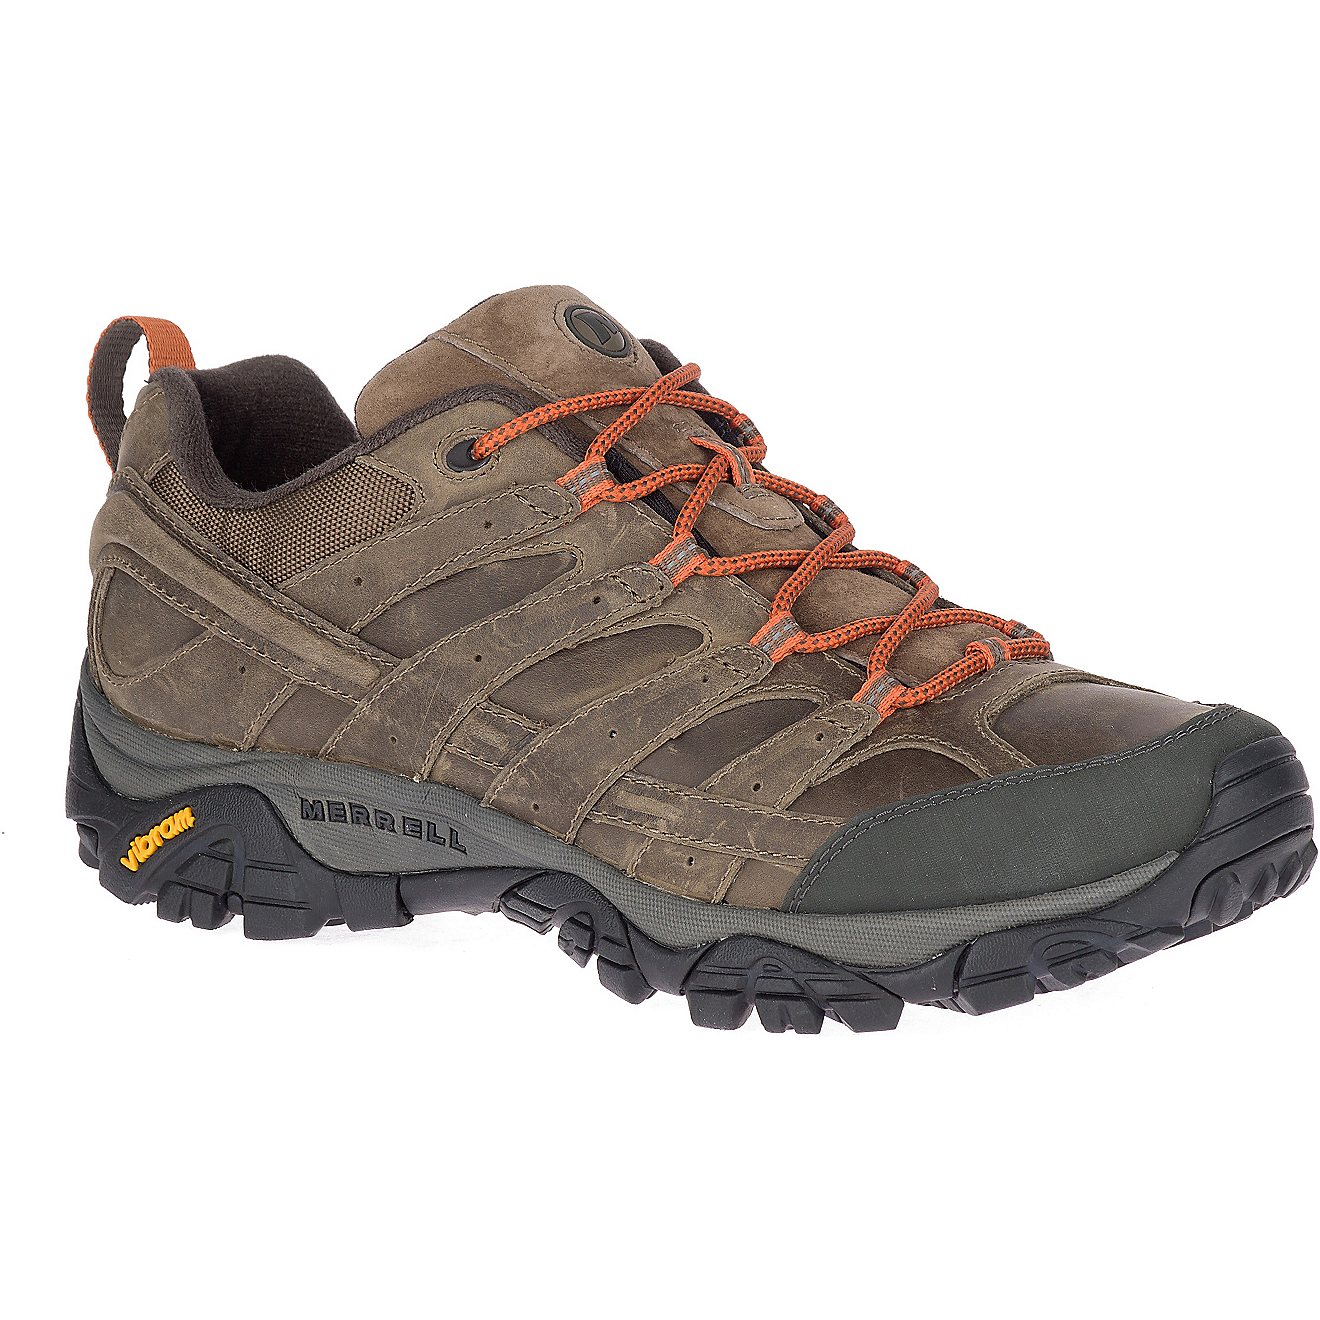 Merrell Mens Moab 2 Prime Hiking Shoe